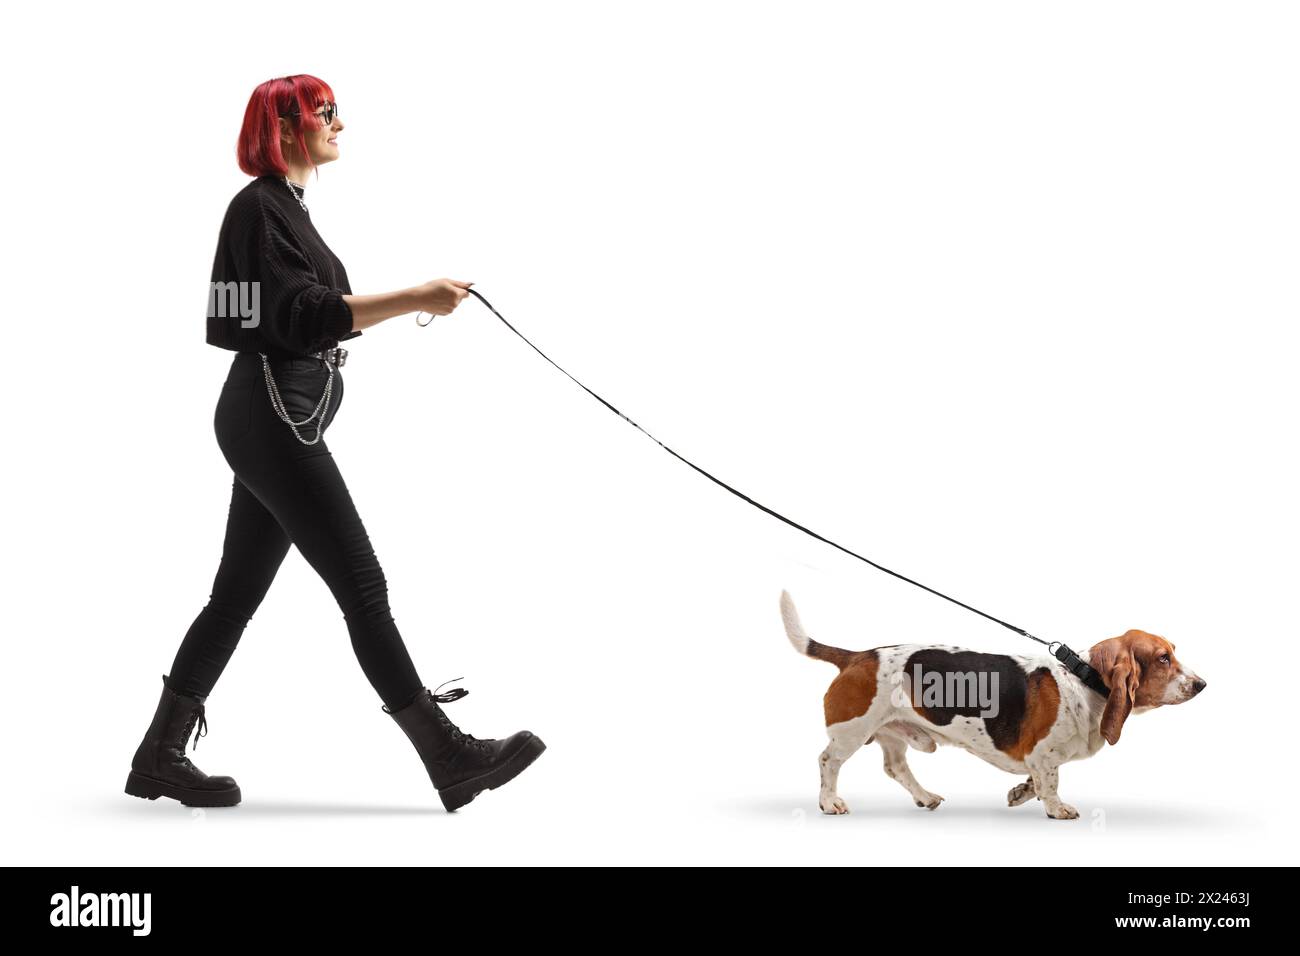 Foto a tutta lunghezza di una giovane donna con i capelli rossi che cammina con un cane da cani basset isolato su sfondo bianco Foto Stock